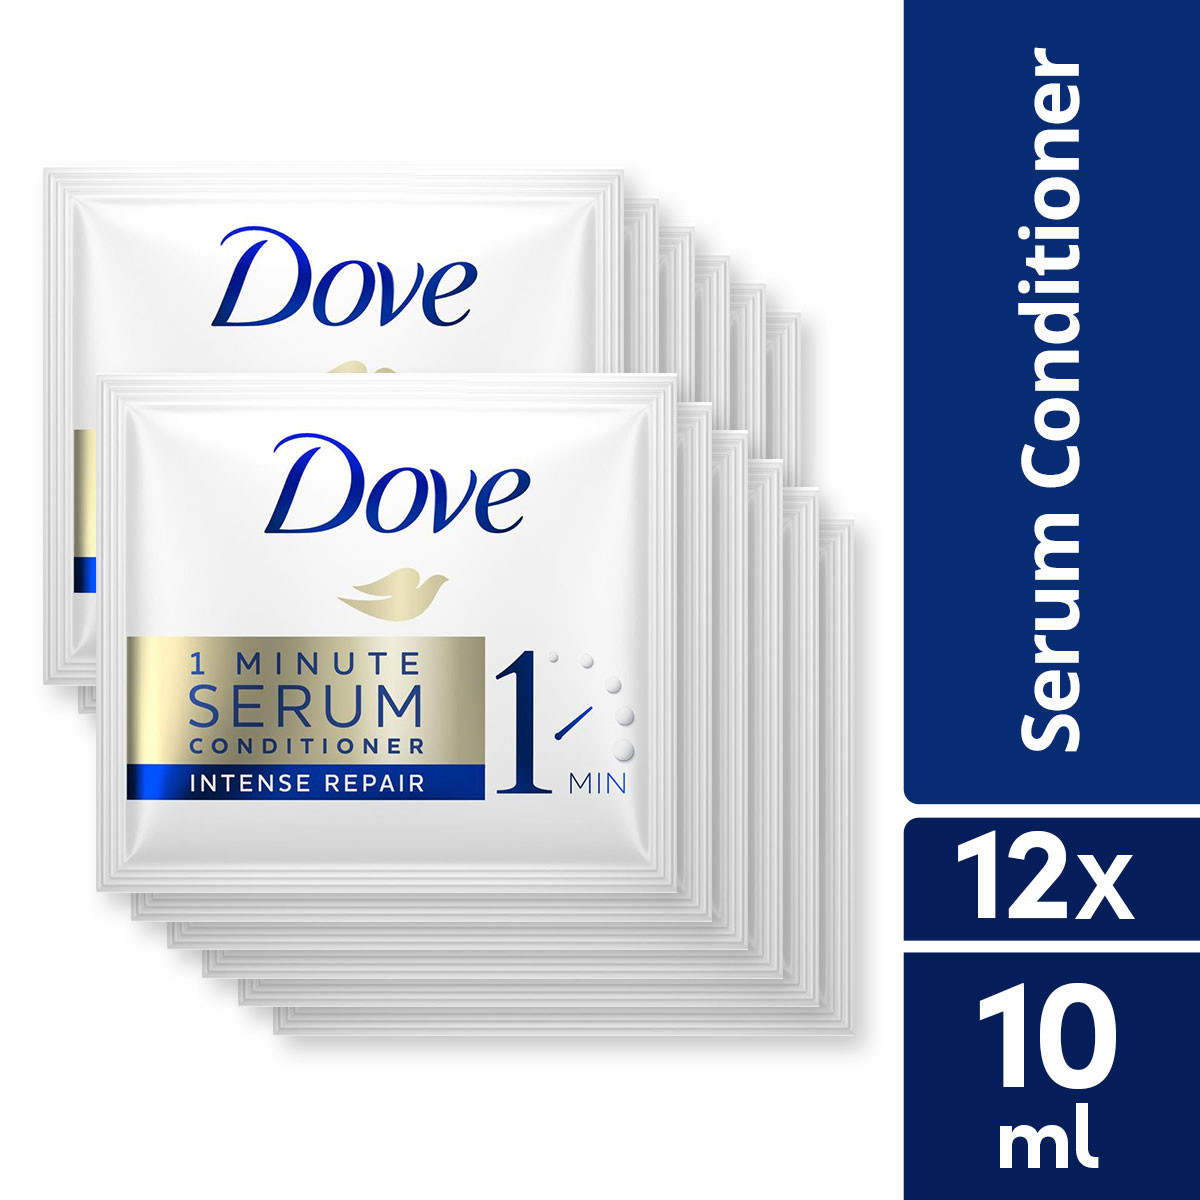 [BUNDLE OF 12] Dove 1 Minute Serum Conditioner Intense Repair 10ML